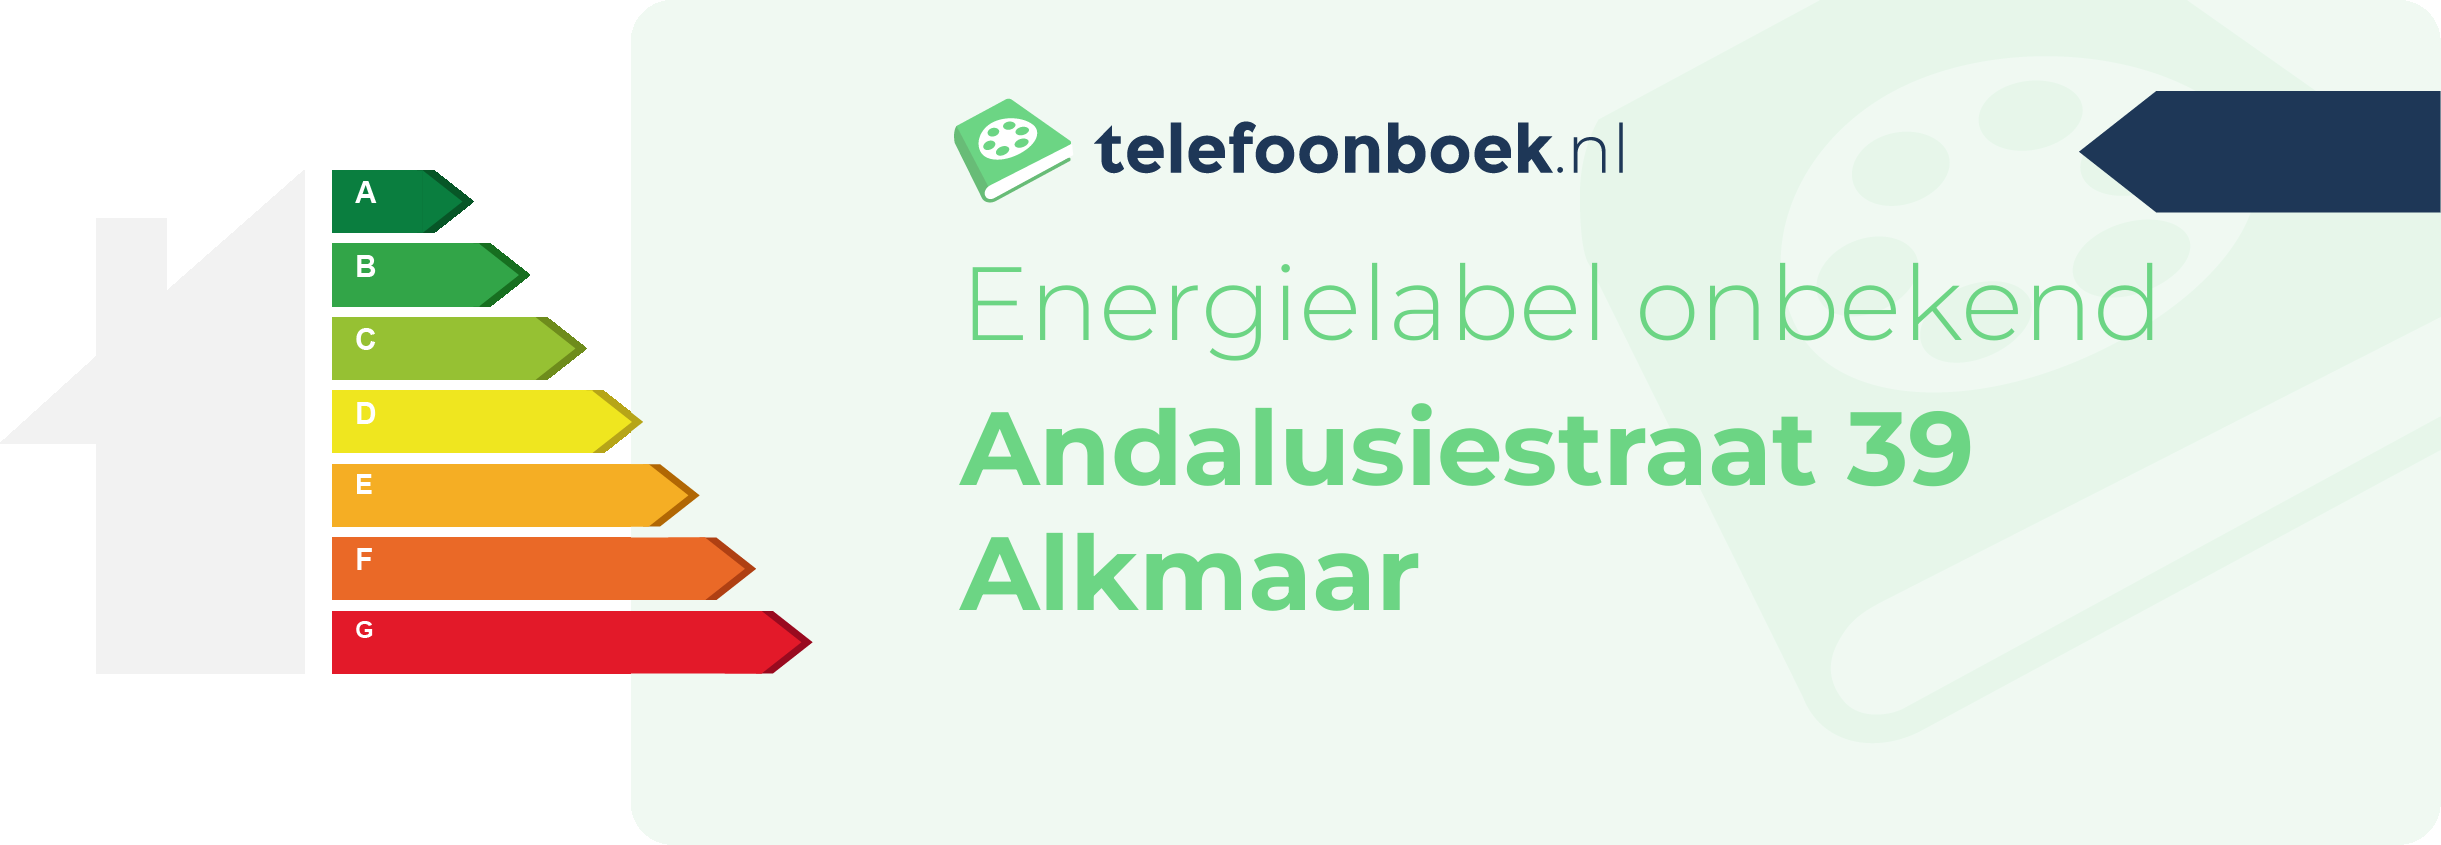 Energielabel Andalusiestraat 39 Alkmaar